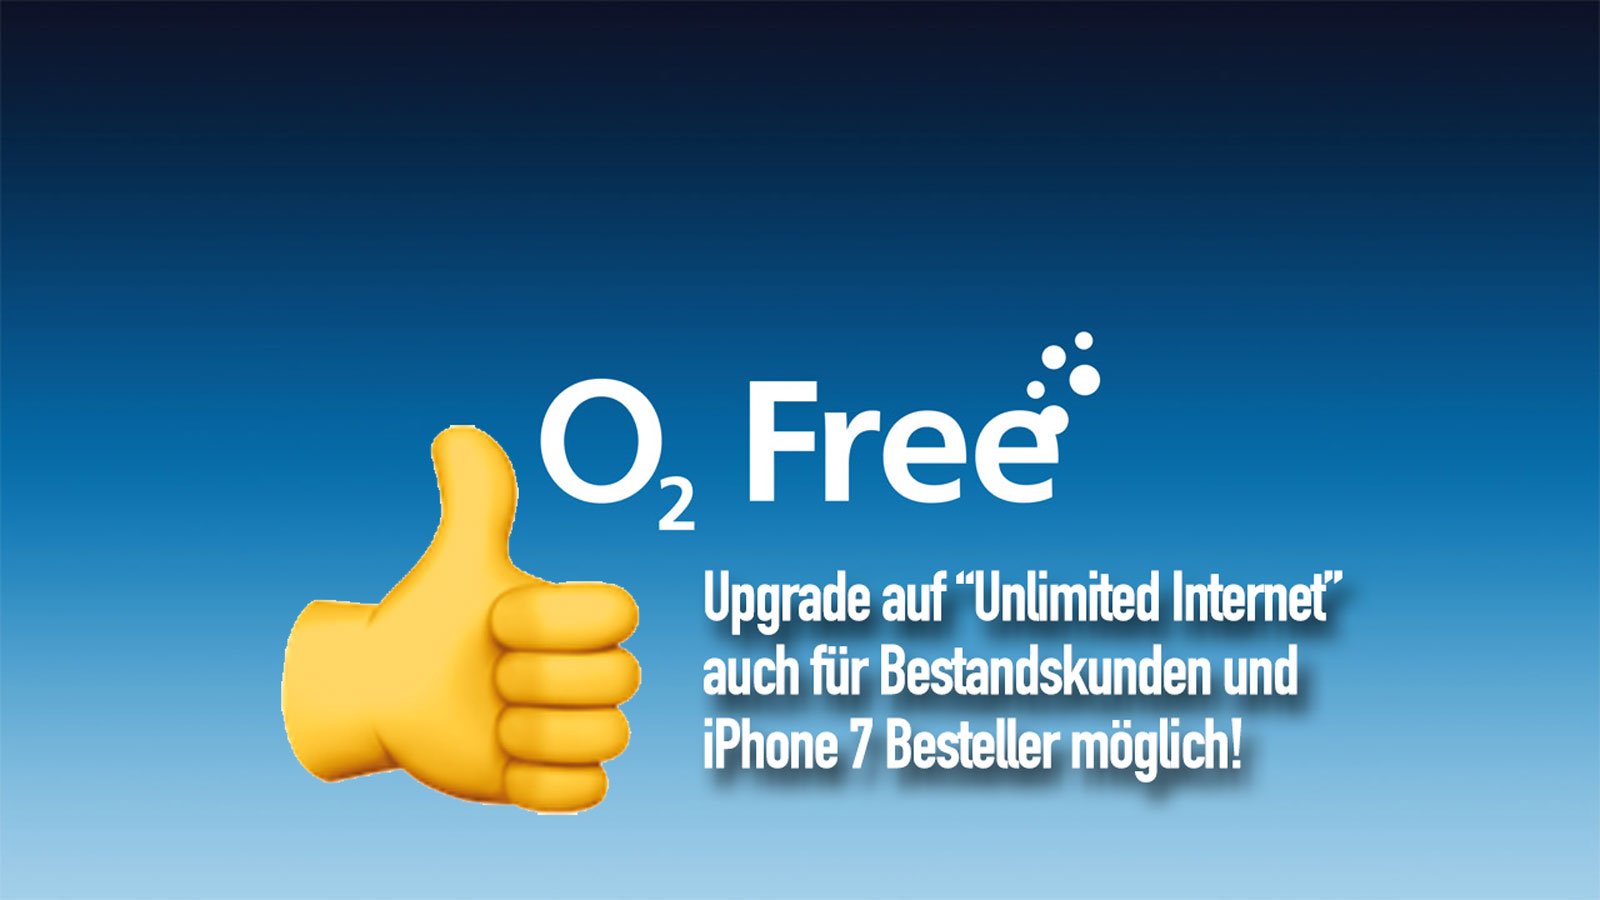 Neue O2 Free Tarife: iPhone 7 Besteller & Bestandkunden können wechseln! 2